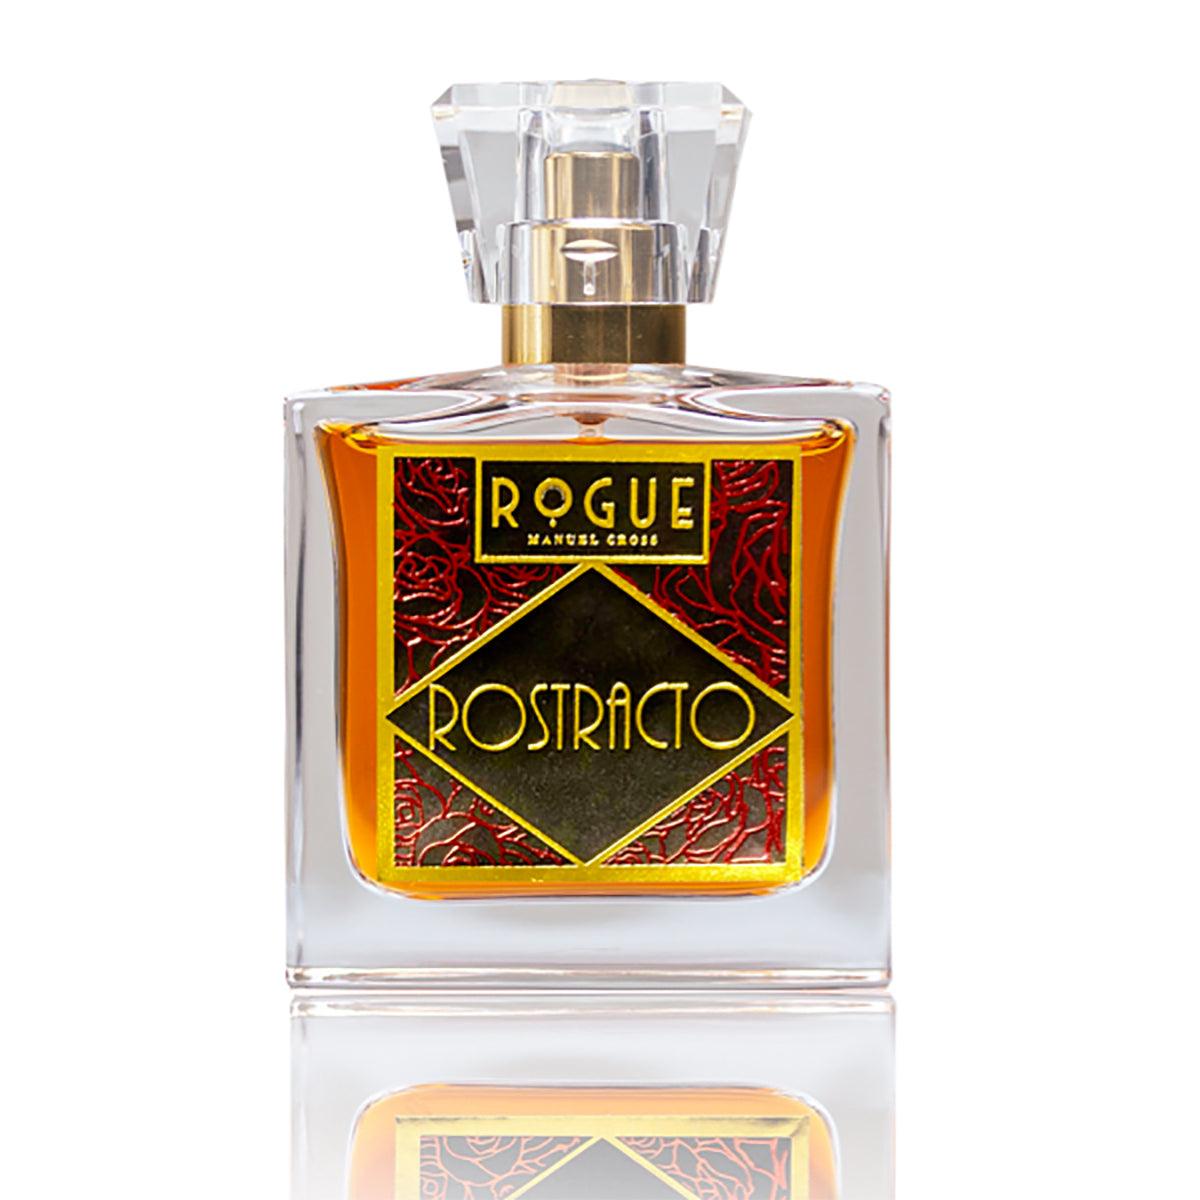 Rostracto - Indigo Perfumery